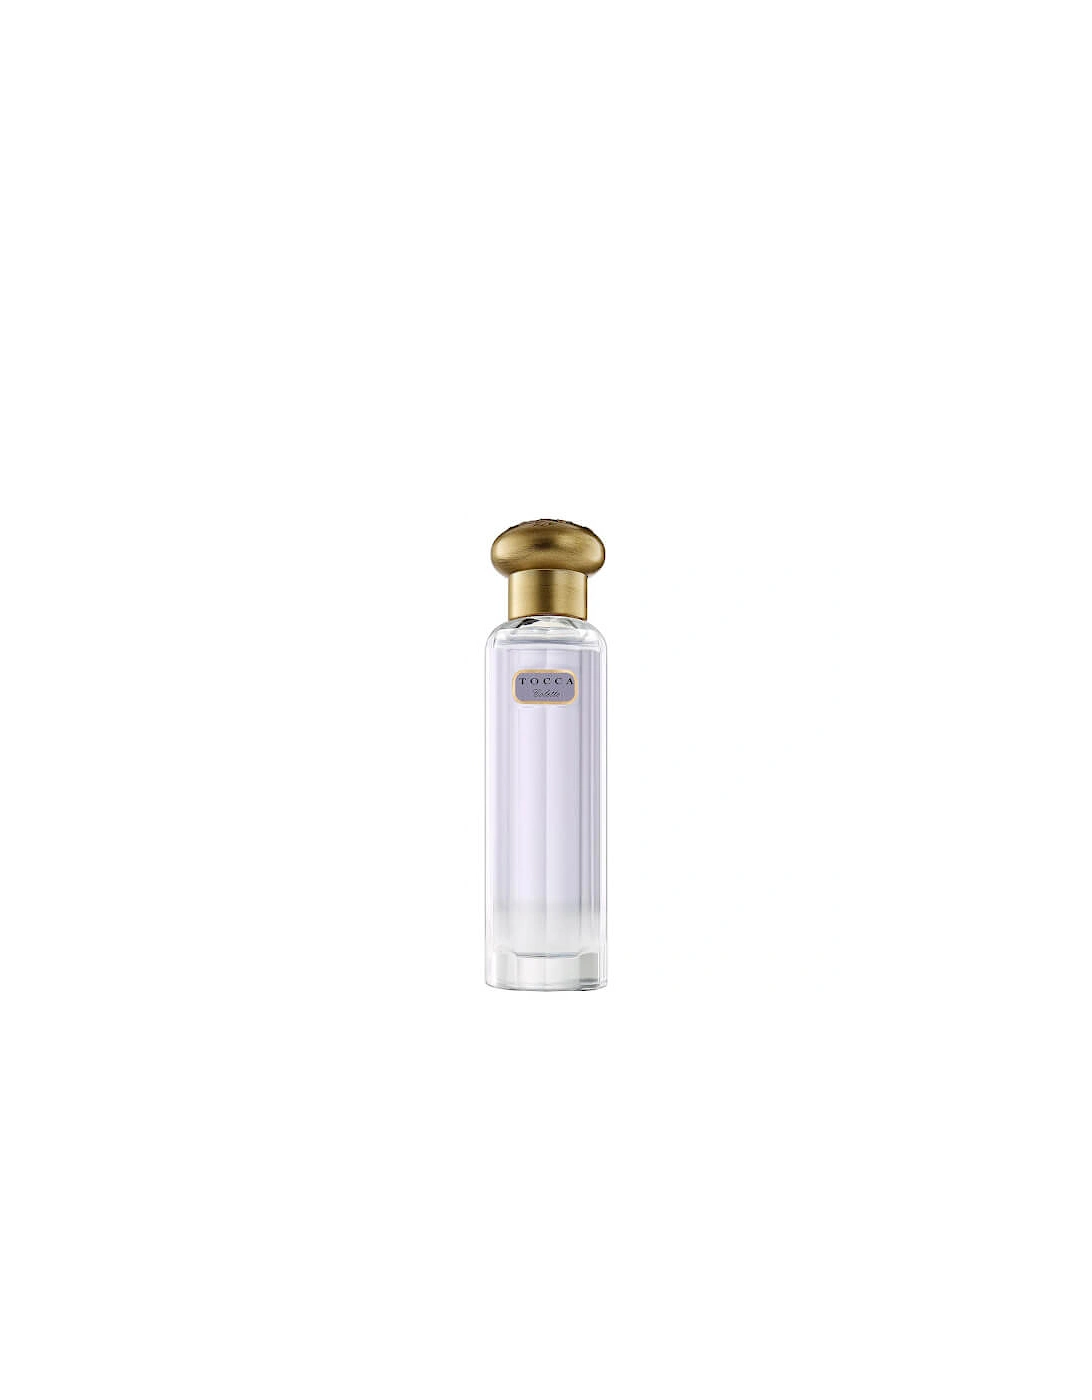 Colette Eau de Parfum Travel Spray 20ml, 2 of 1